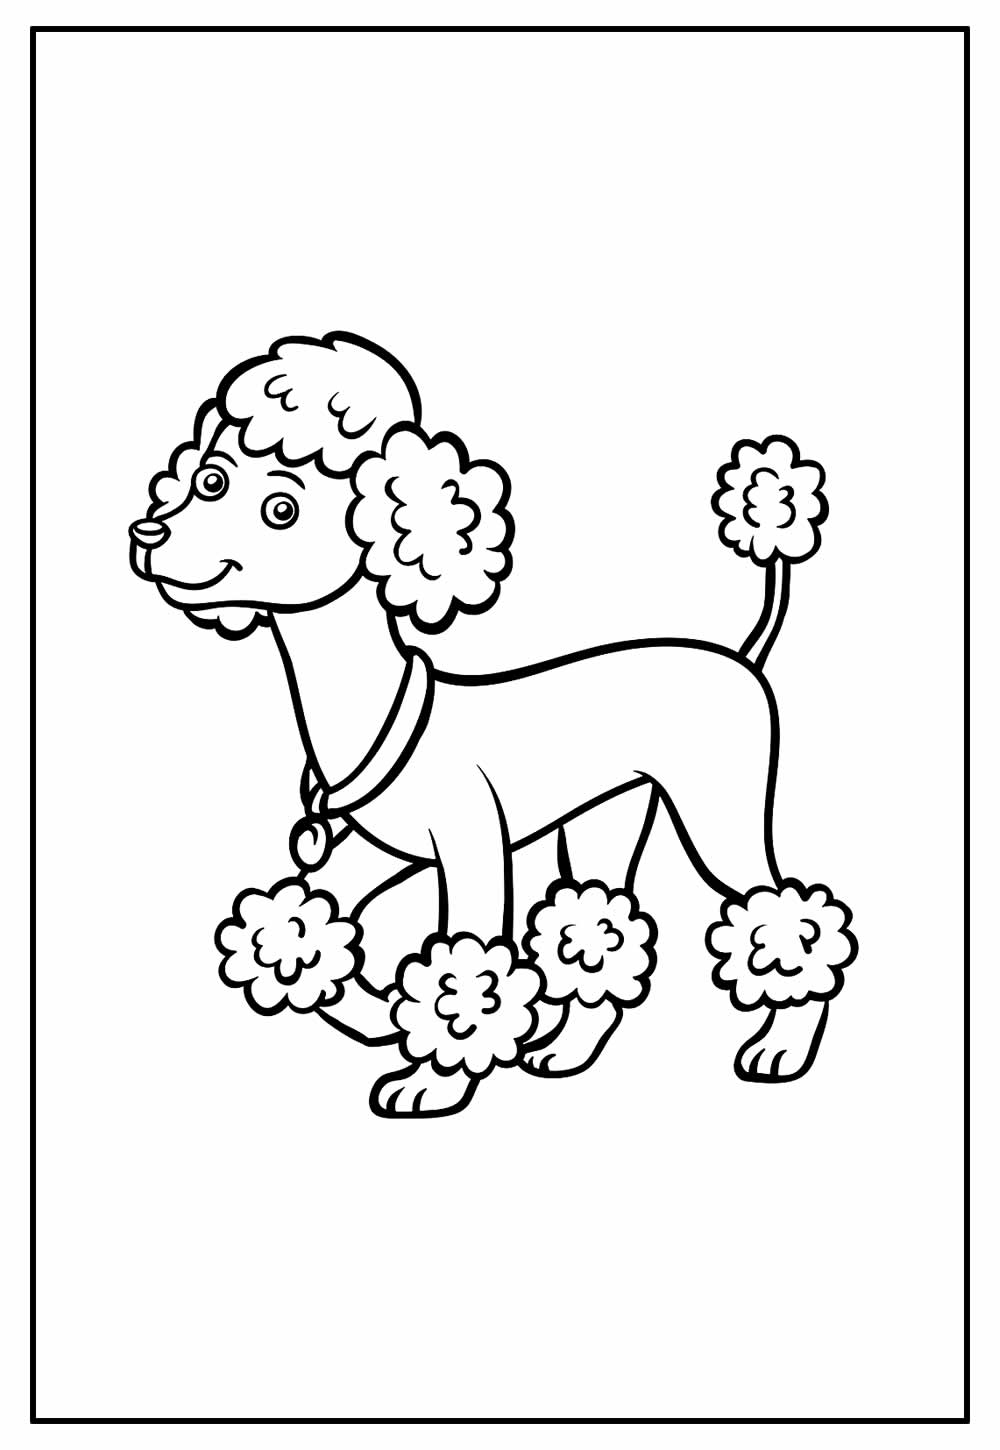 desenho de cachorro poodle para colorir. ilustração vetorial de contorno  7534268 Vetor no Vecteezy